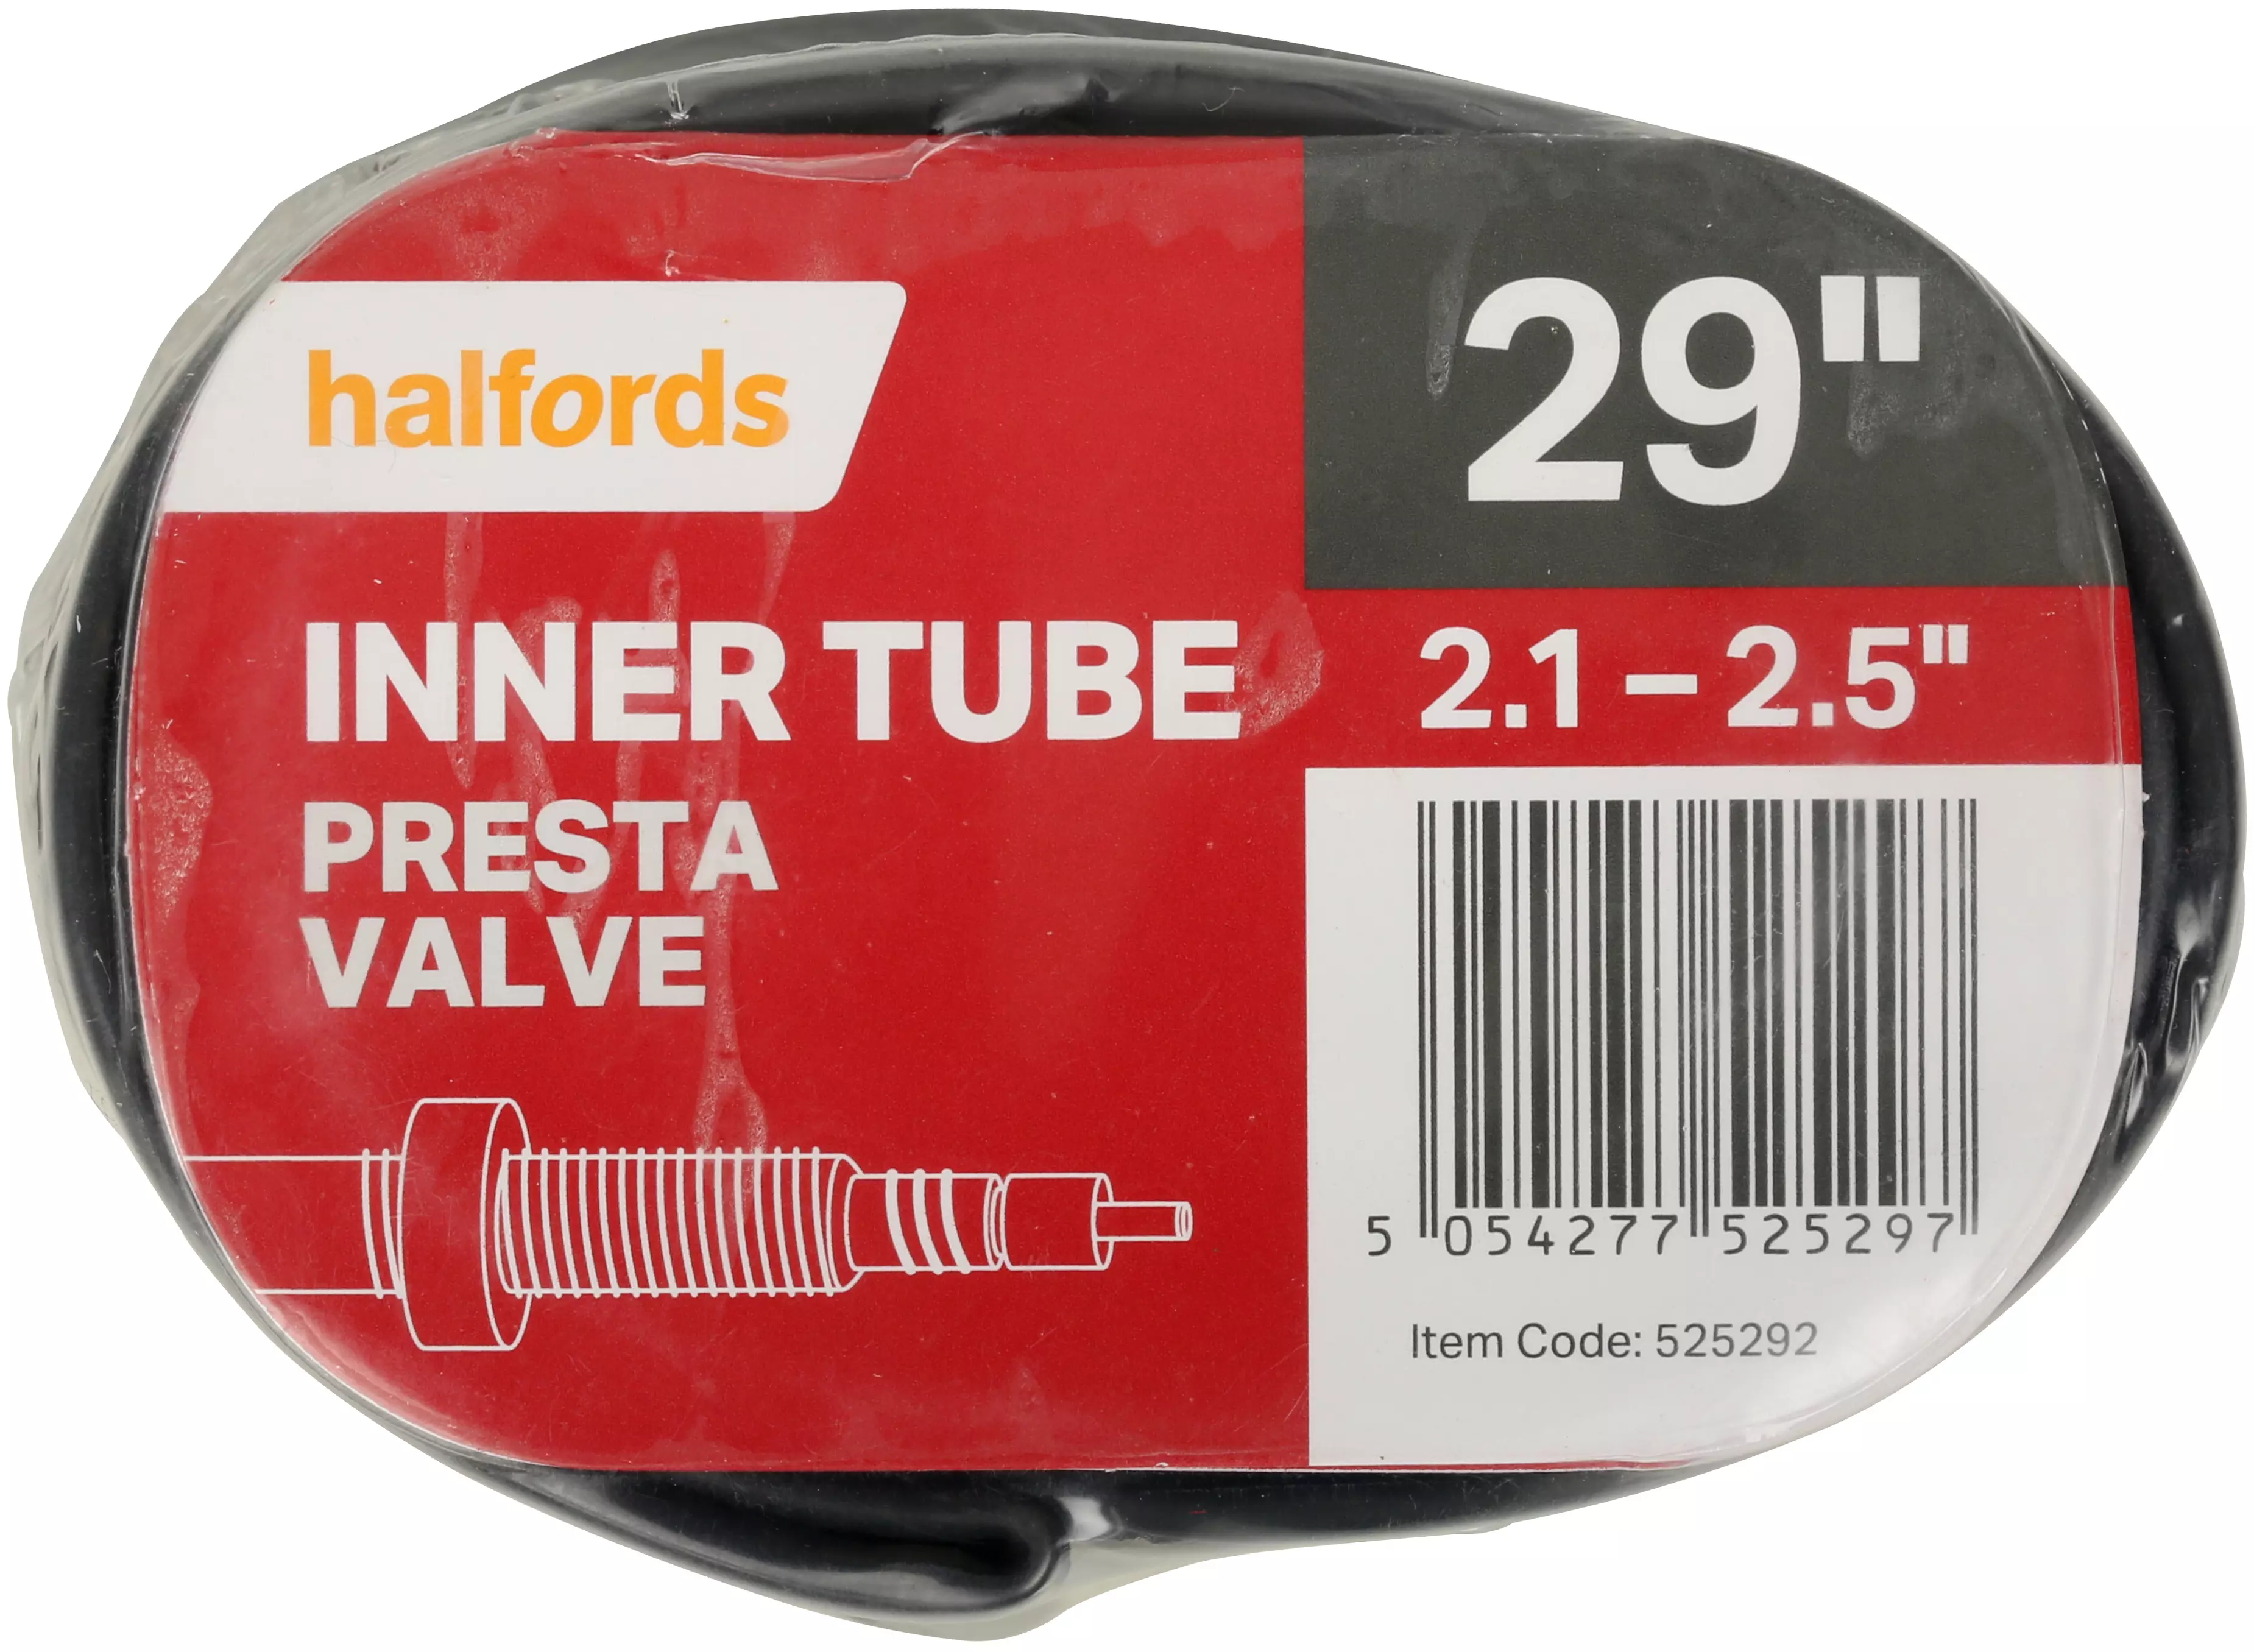 halfords tubes